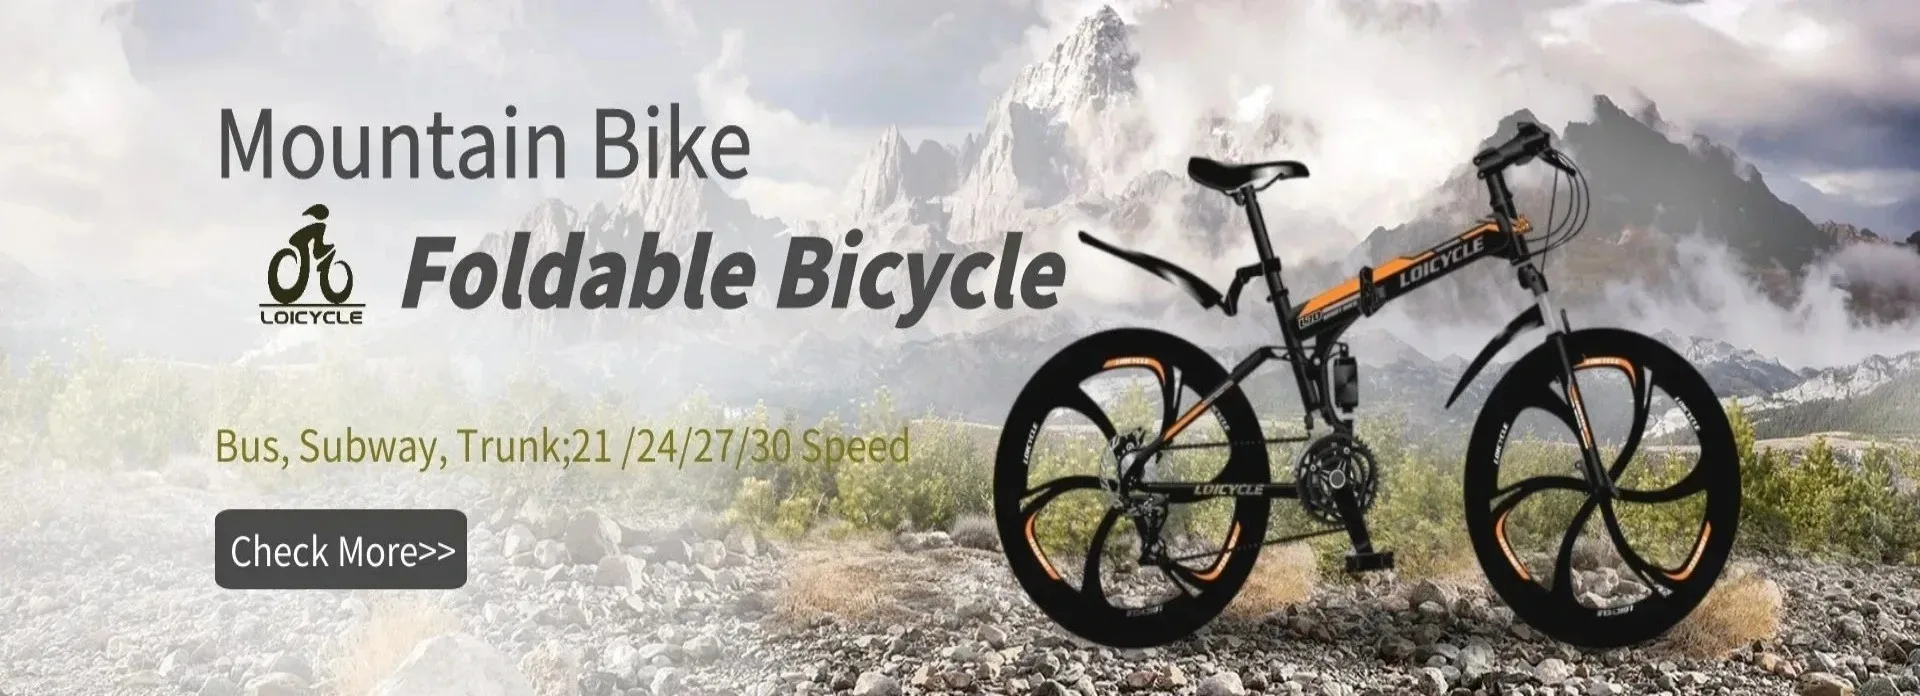 foldable bikes